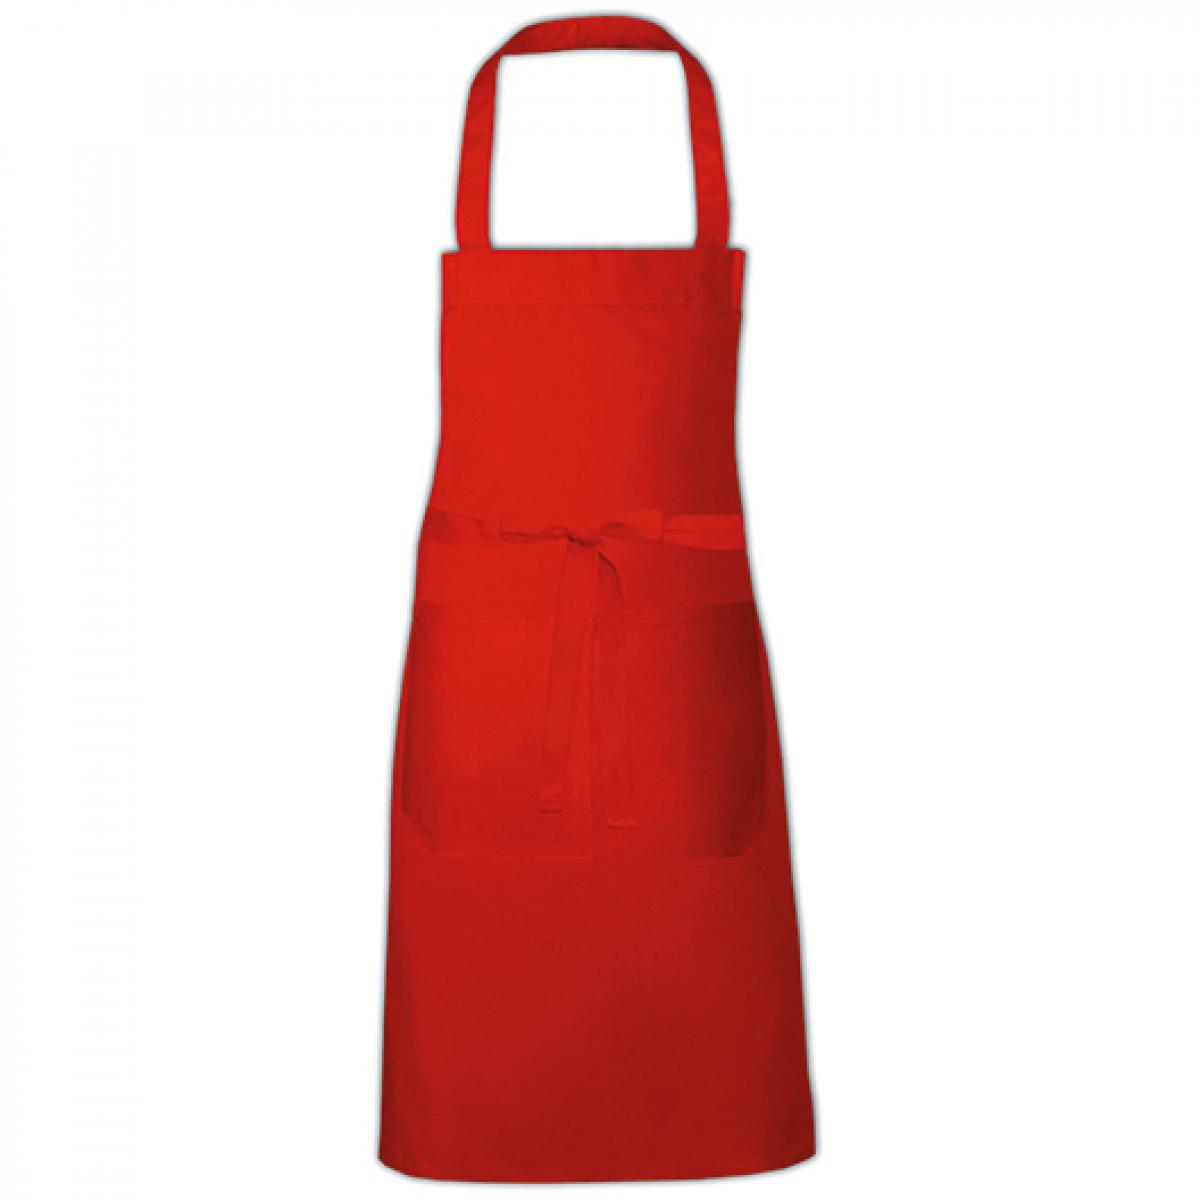 Hersteller: Link Kitchen Wear Herstellernummer: HS8073 Artikelbezeichnung: Hobby Apron - 73 x 80 cm - Waschbar bis 60 °C Farbe: Red